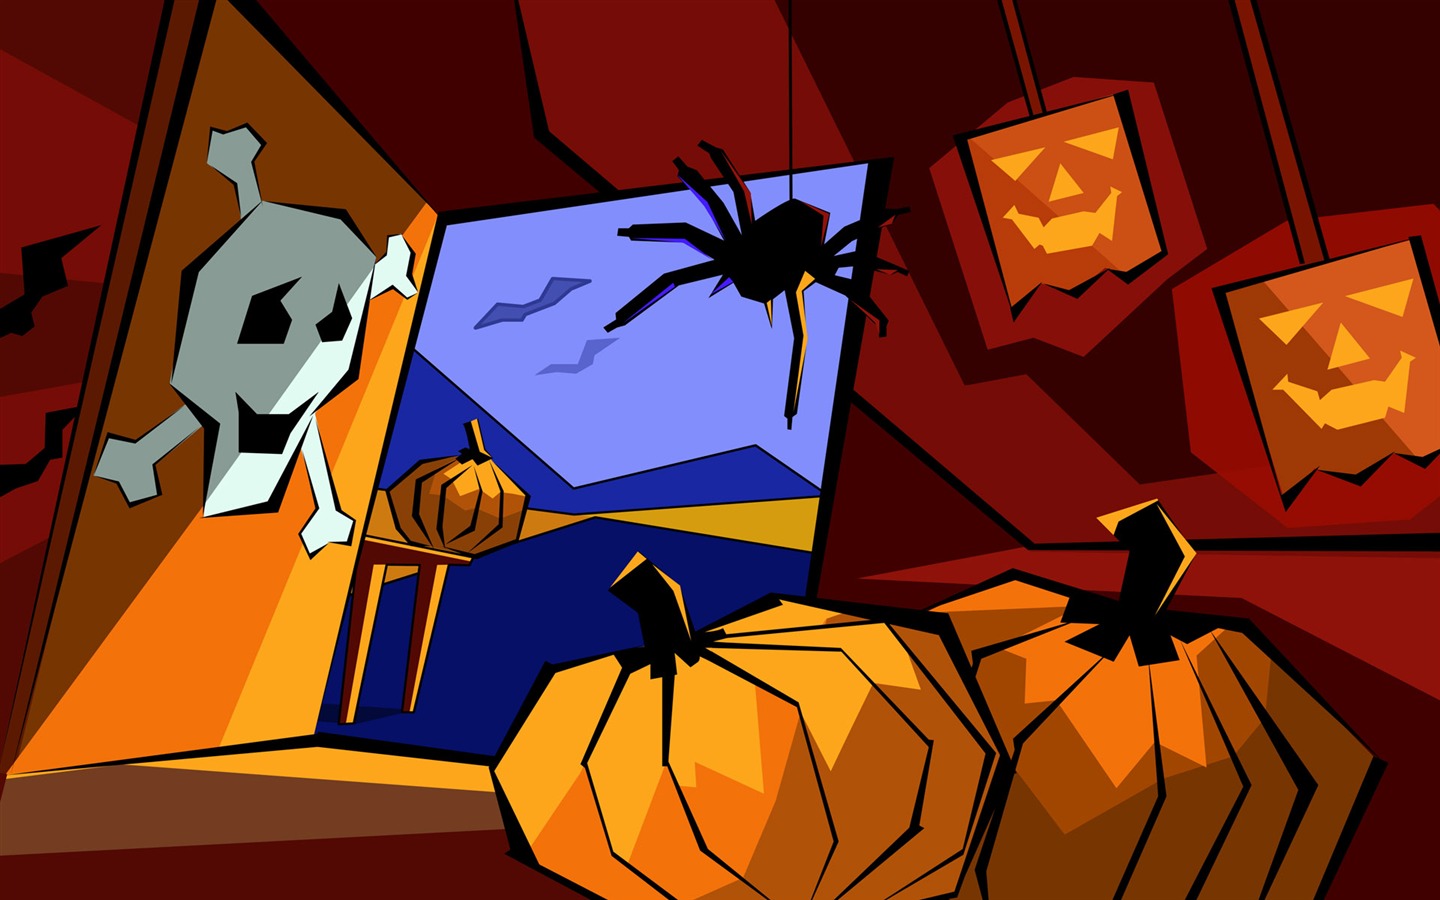 Fondos de Halloween temáticos (5) #15 - 1440x900